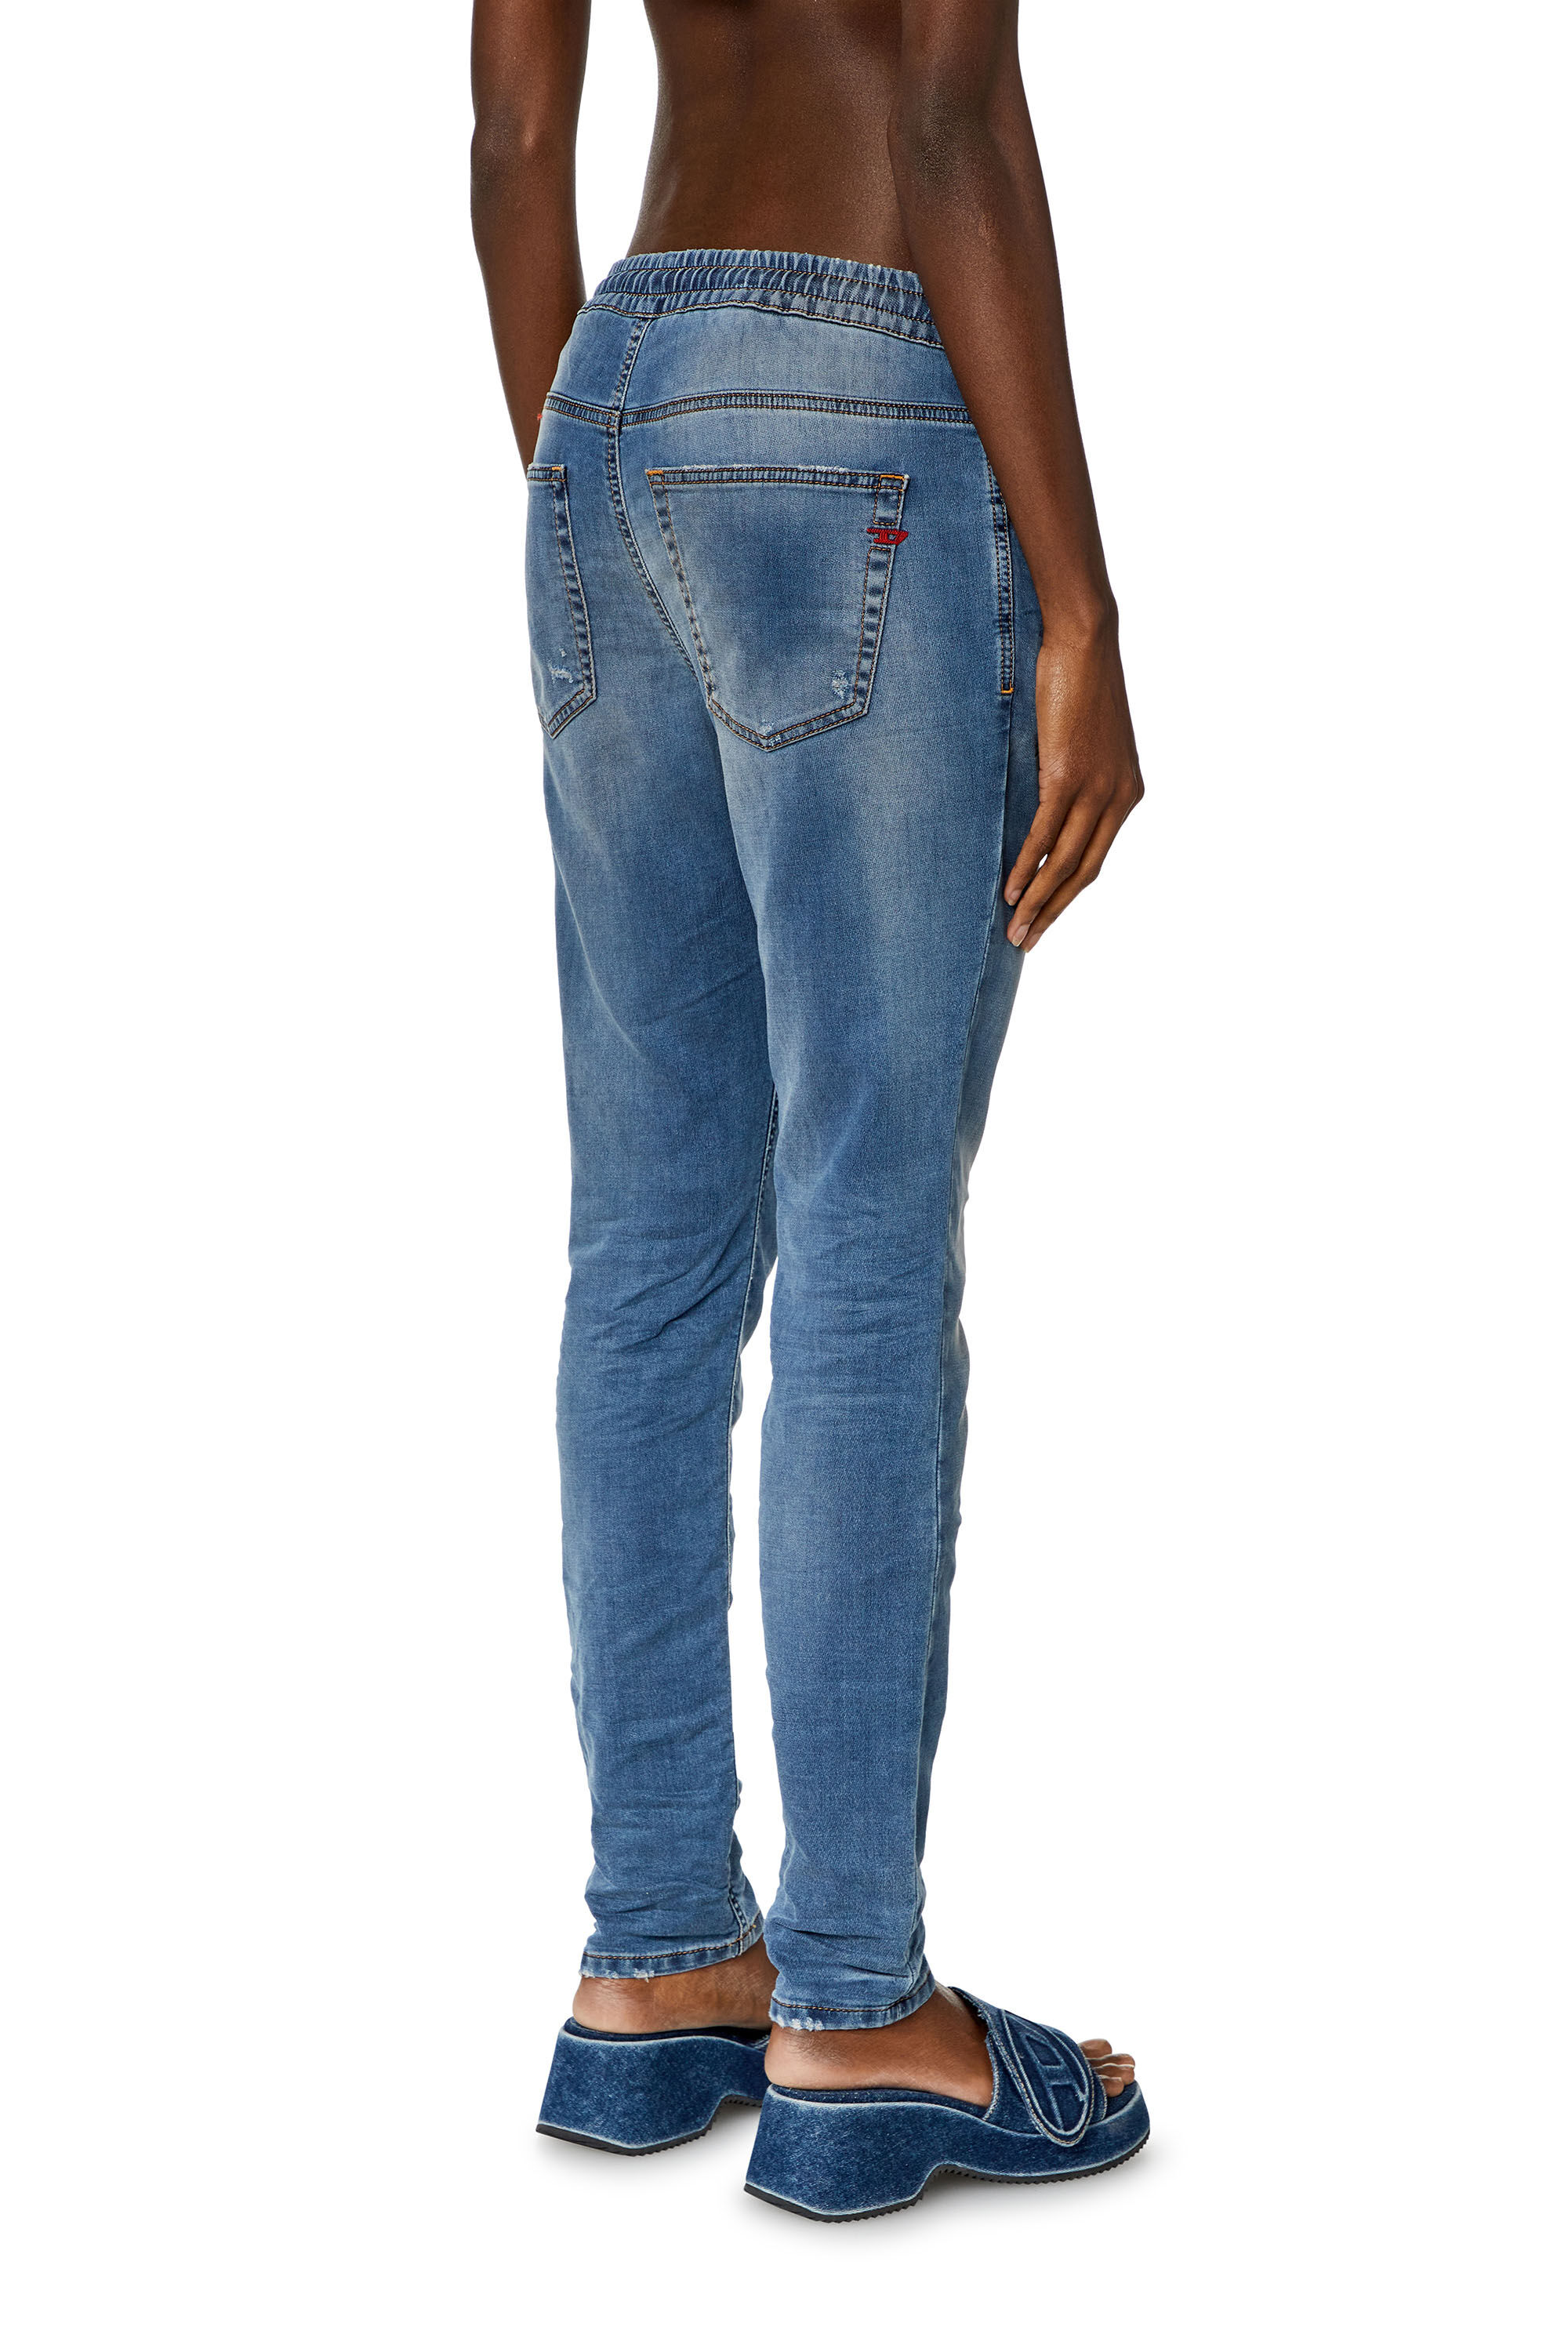 Women's Boyfriend Jeans | Medium blue | Diesel 2031 D-Krailey 